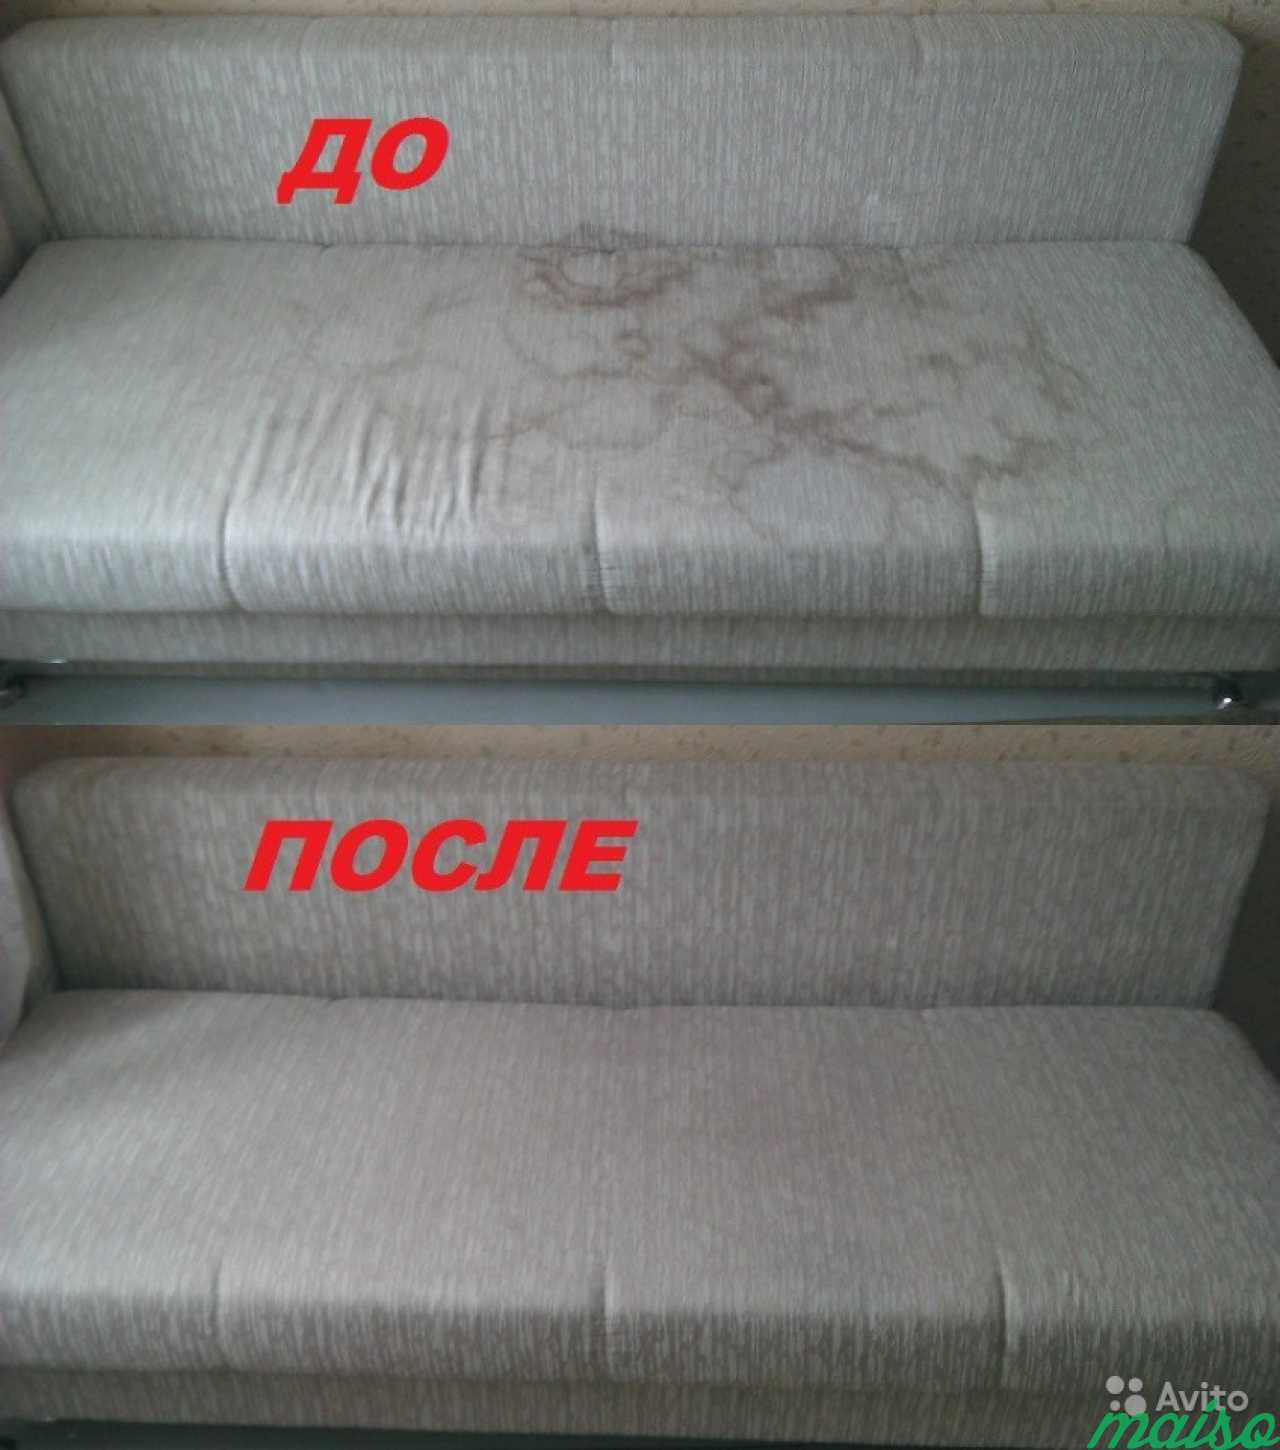 Химчистка мягкой мебели и ковров в Санкт-Петербурге. Фото 3